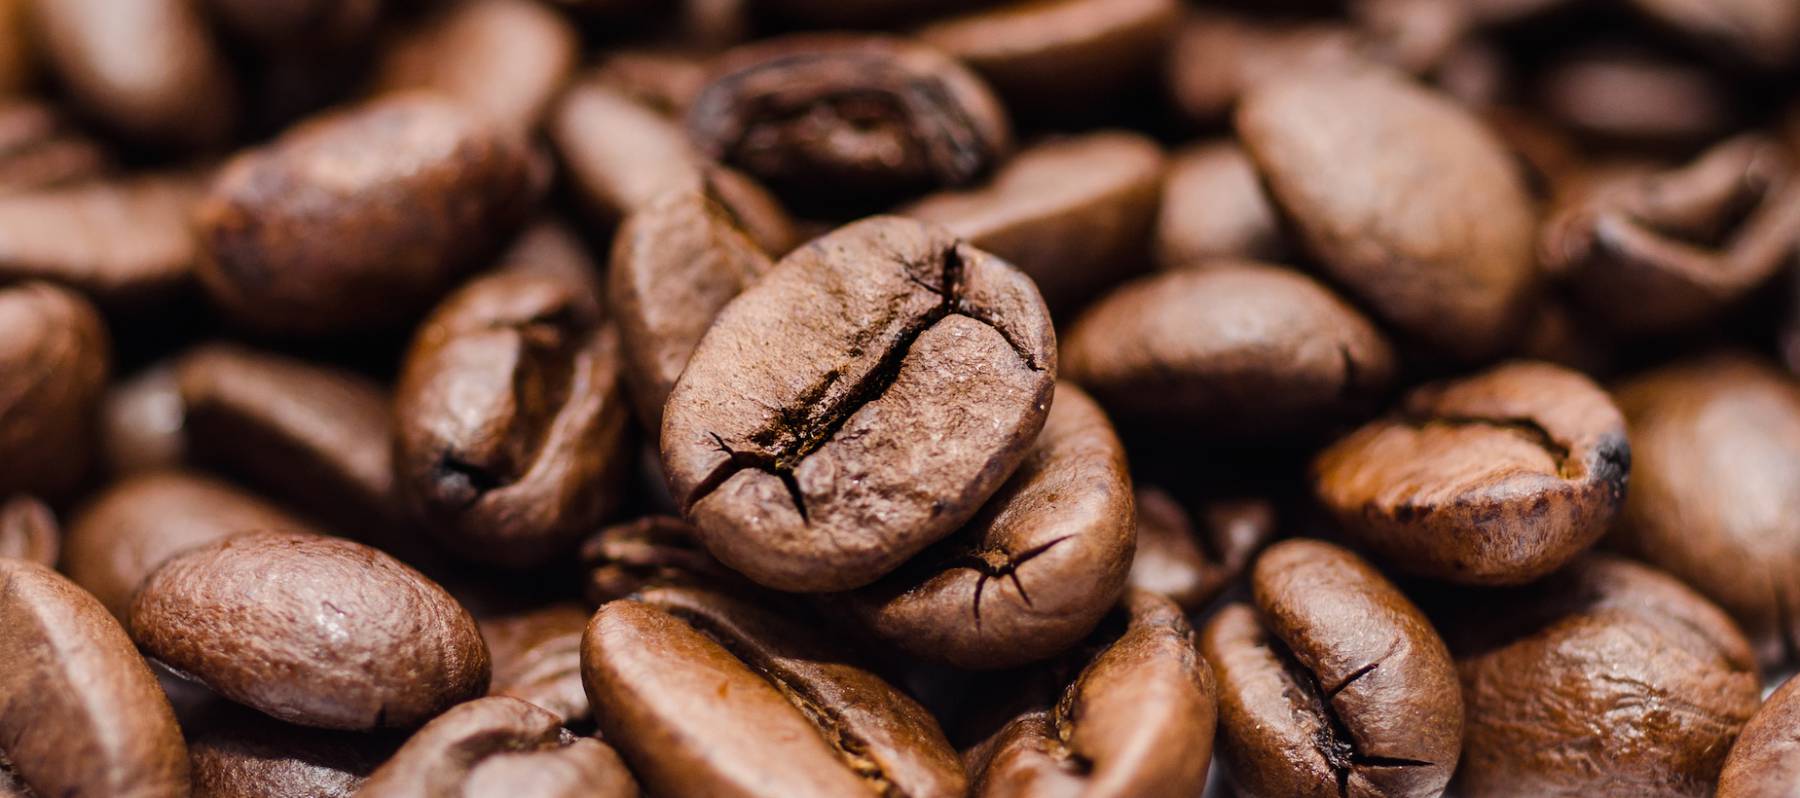 ¿Es saludable tomar café?